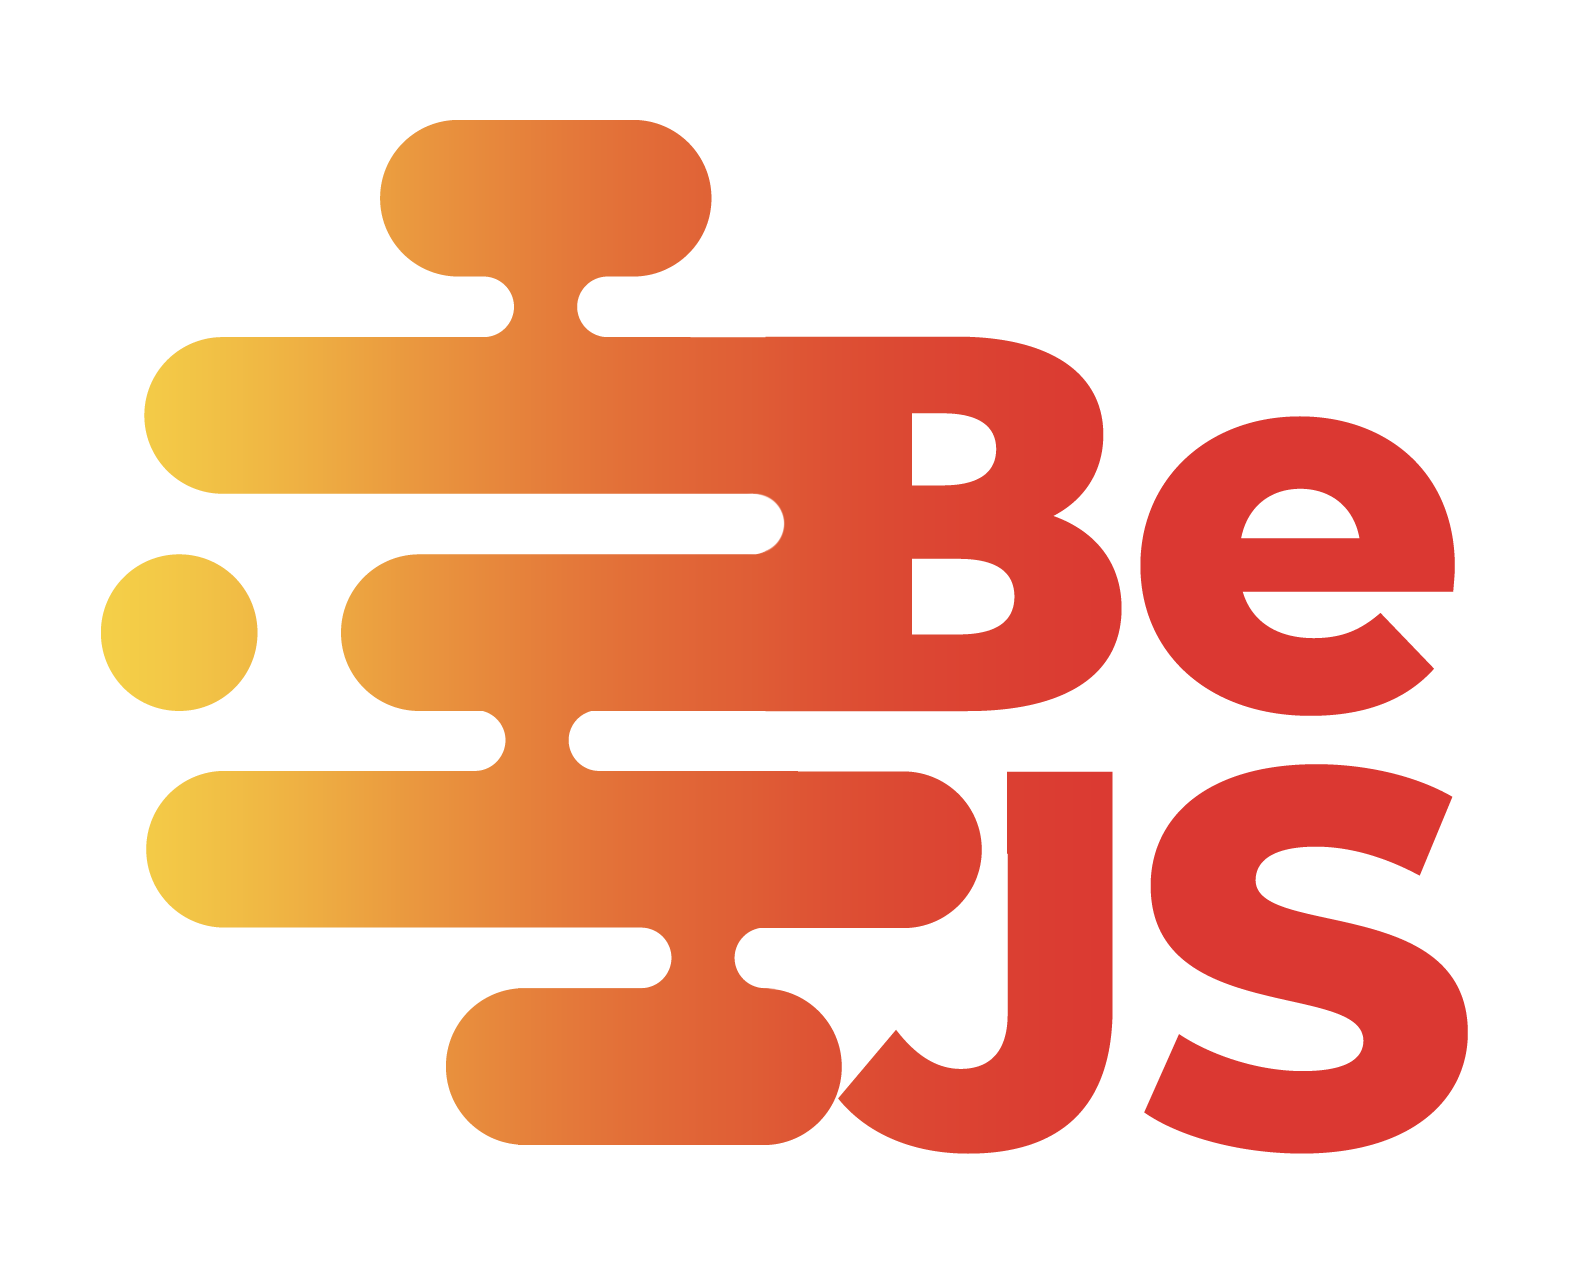 BeJS logo